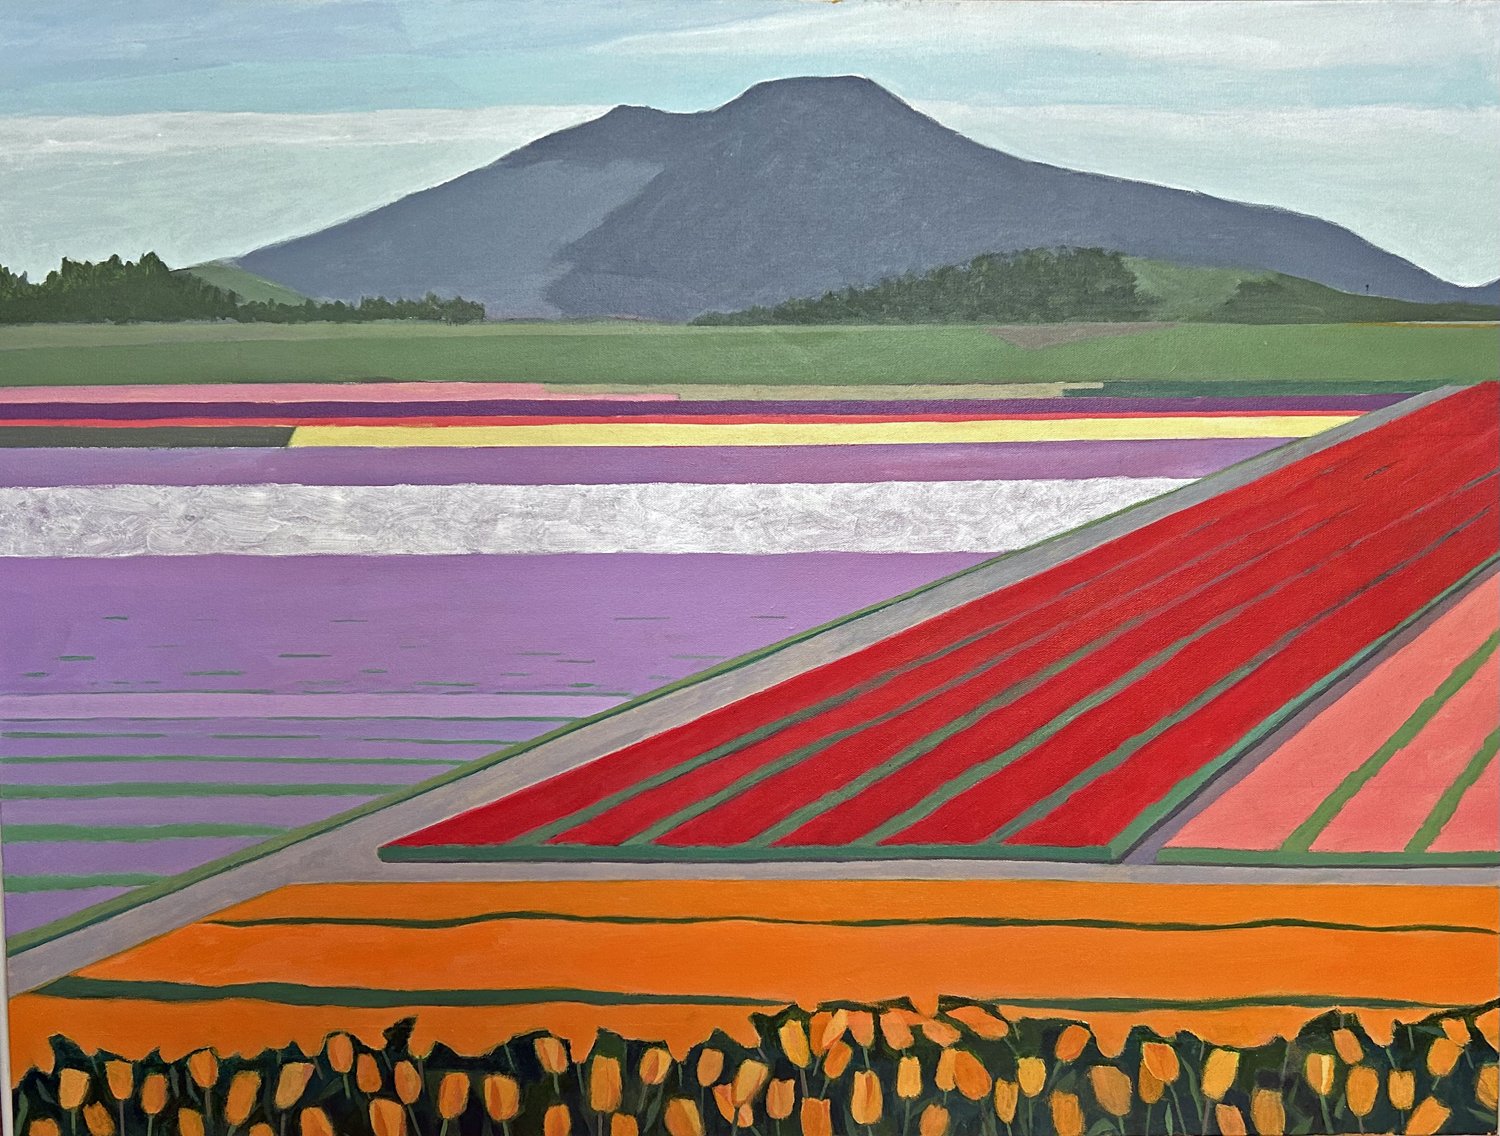  The Tulip Fields Acrylic on canvas 30" x 40" NFS 